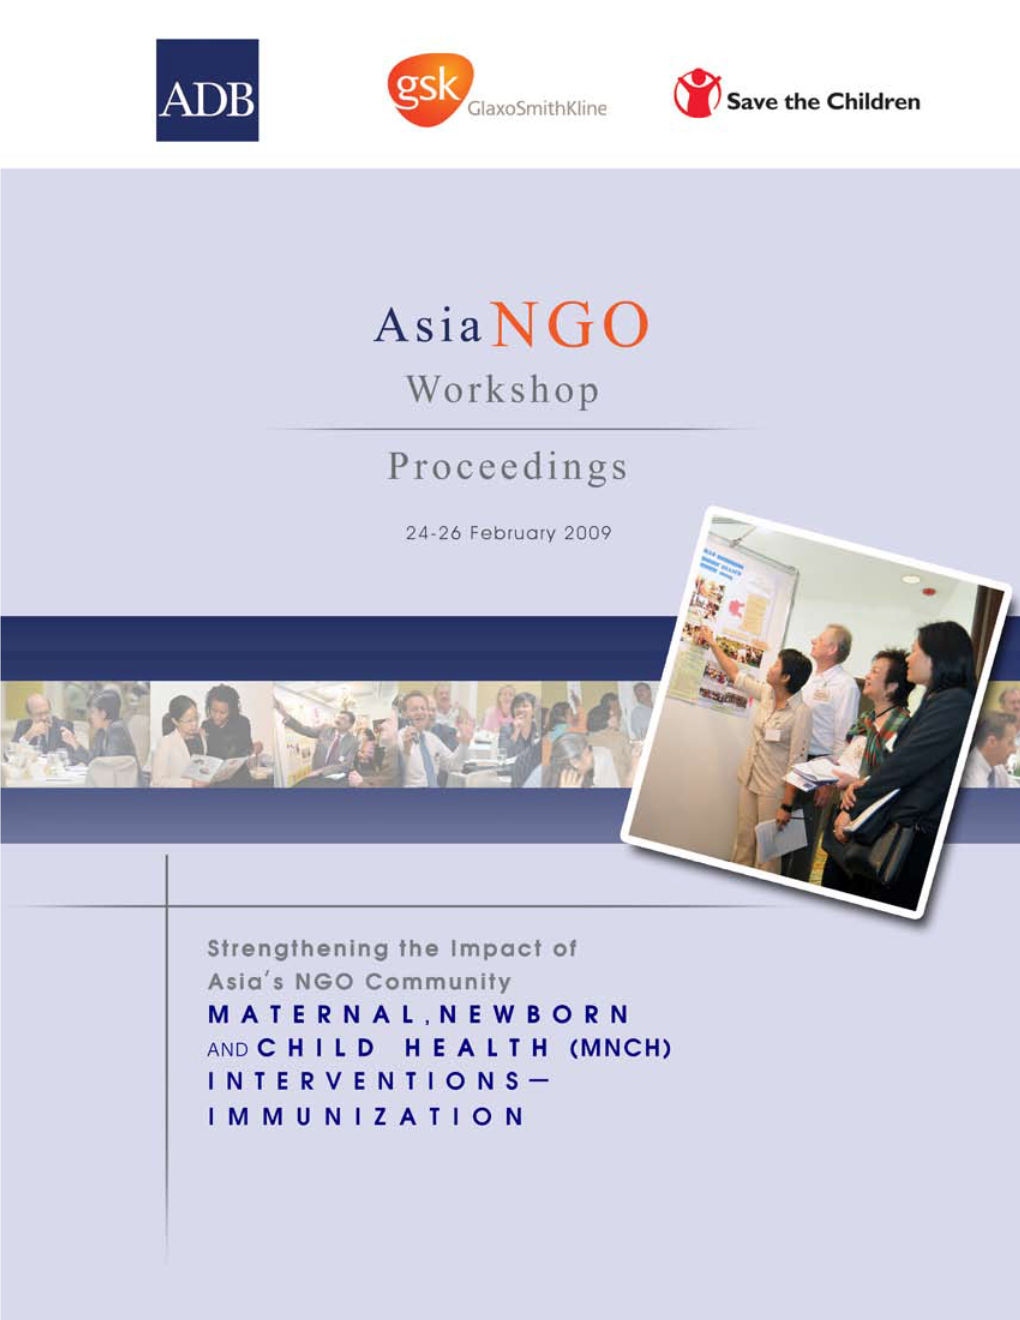 Asia NGO Workshop